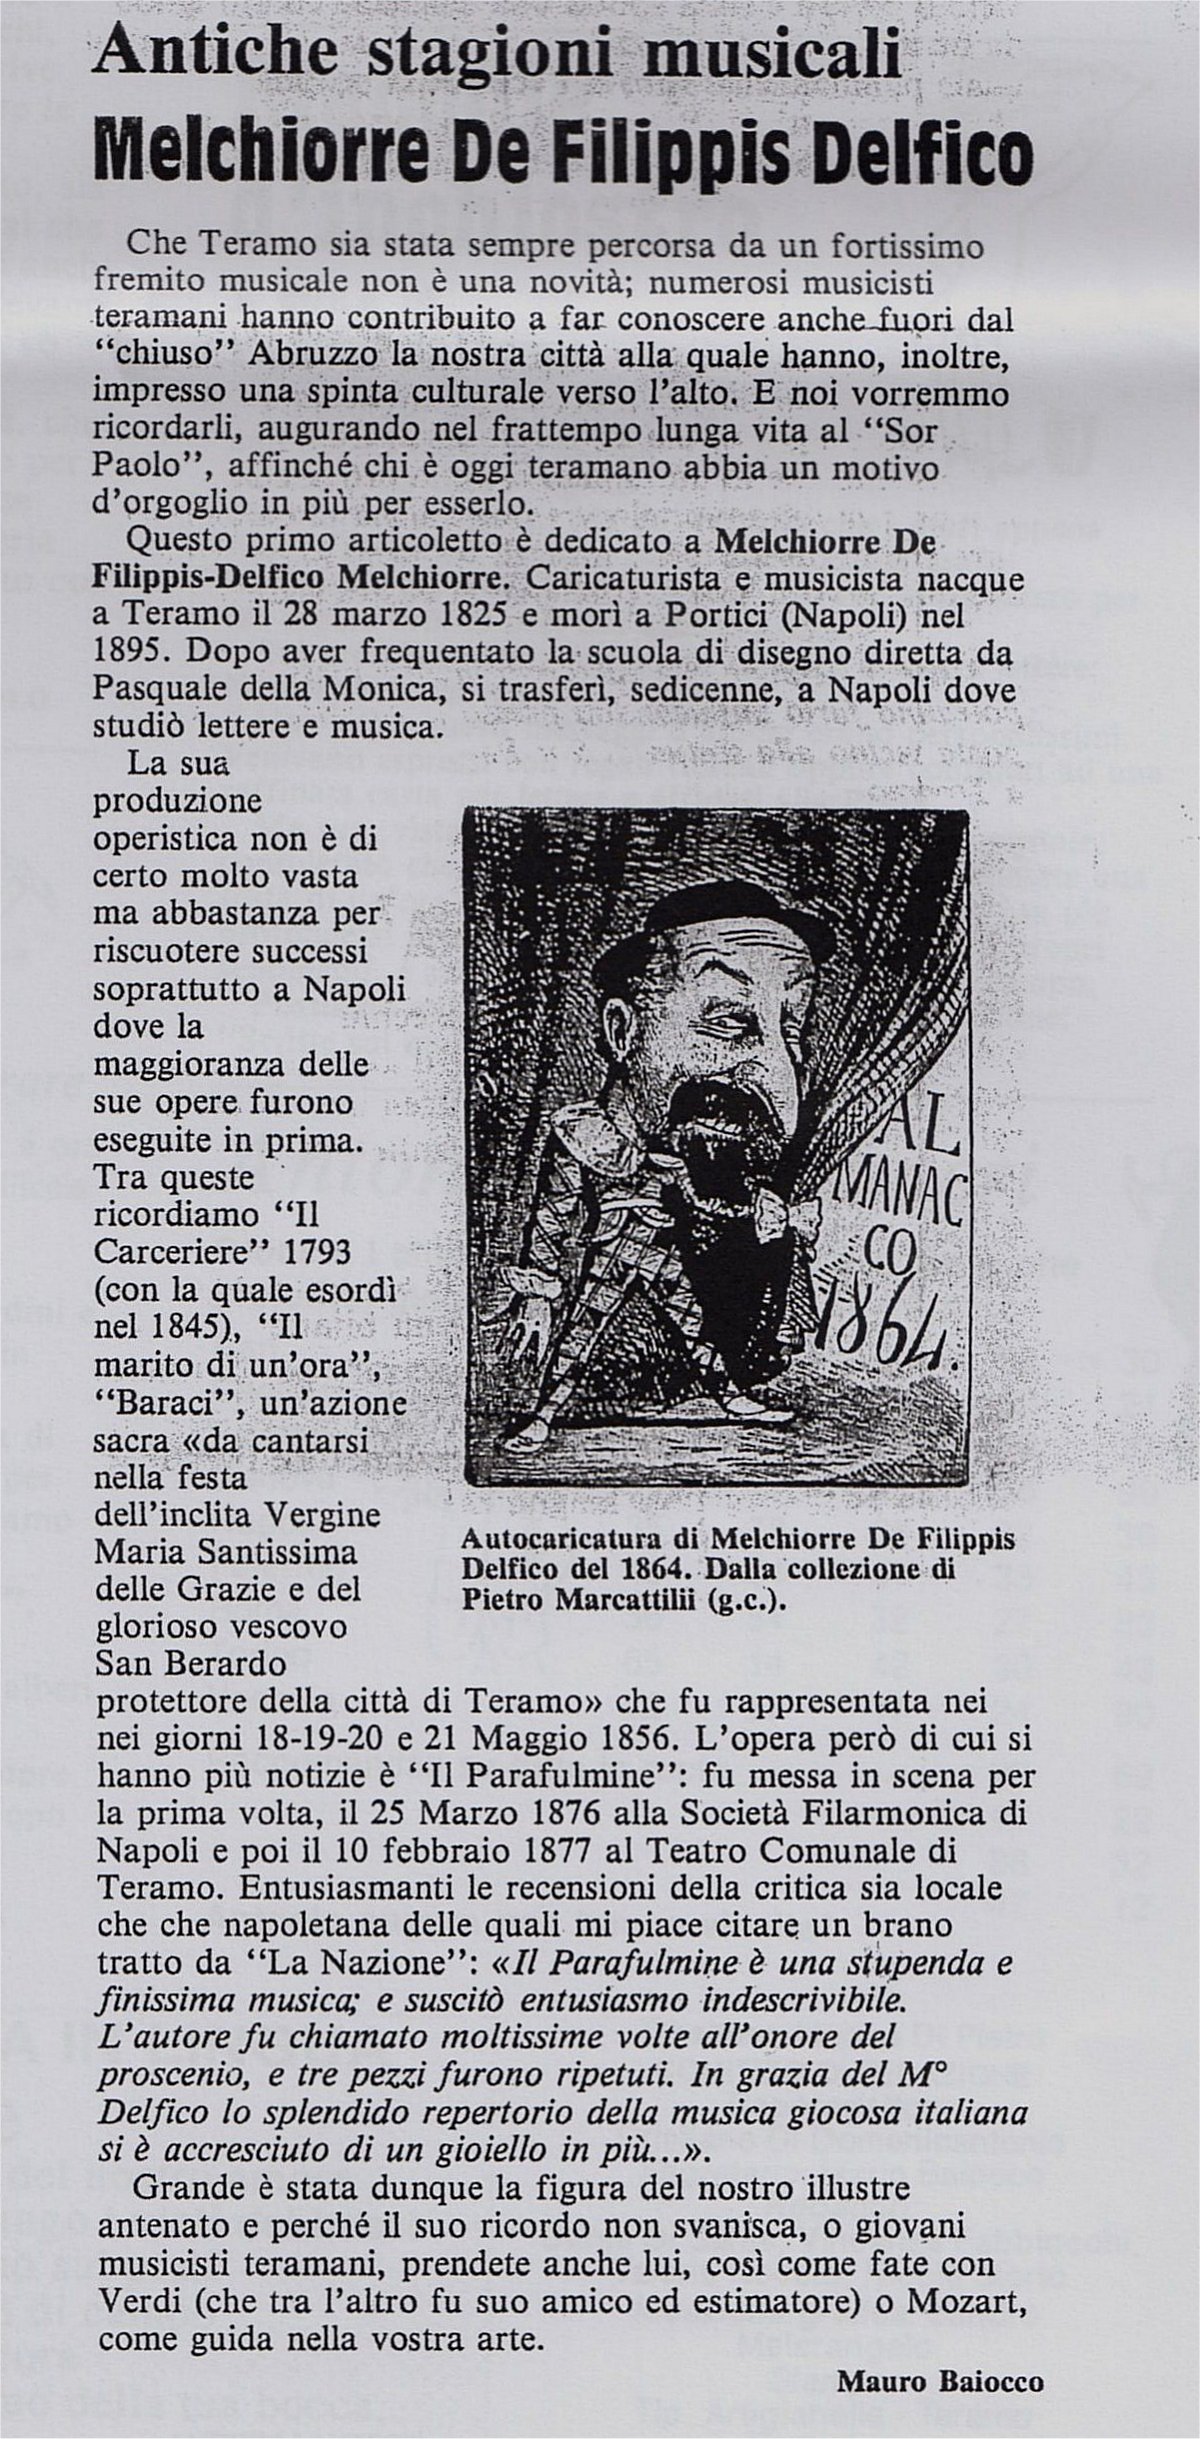 "Sor Paolo", nuova serie, anno 1, n.0, Teramo 25 settembre 1993